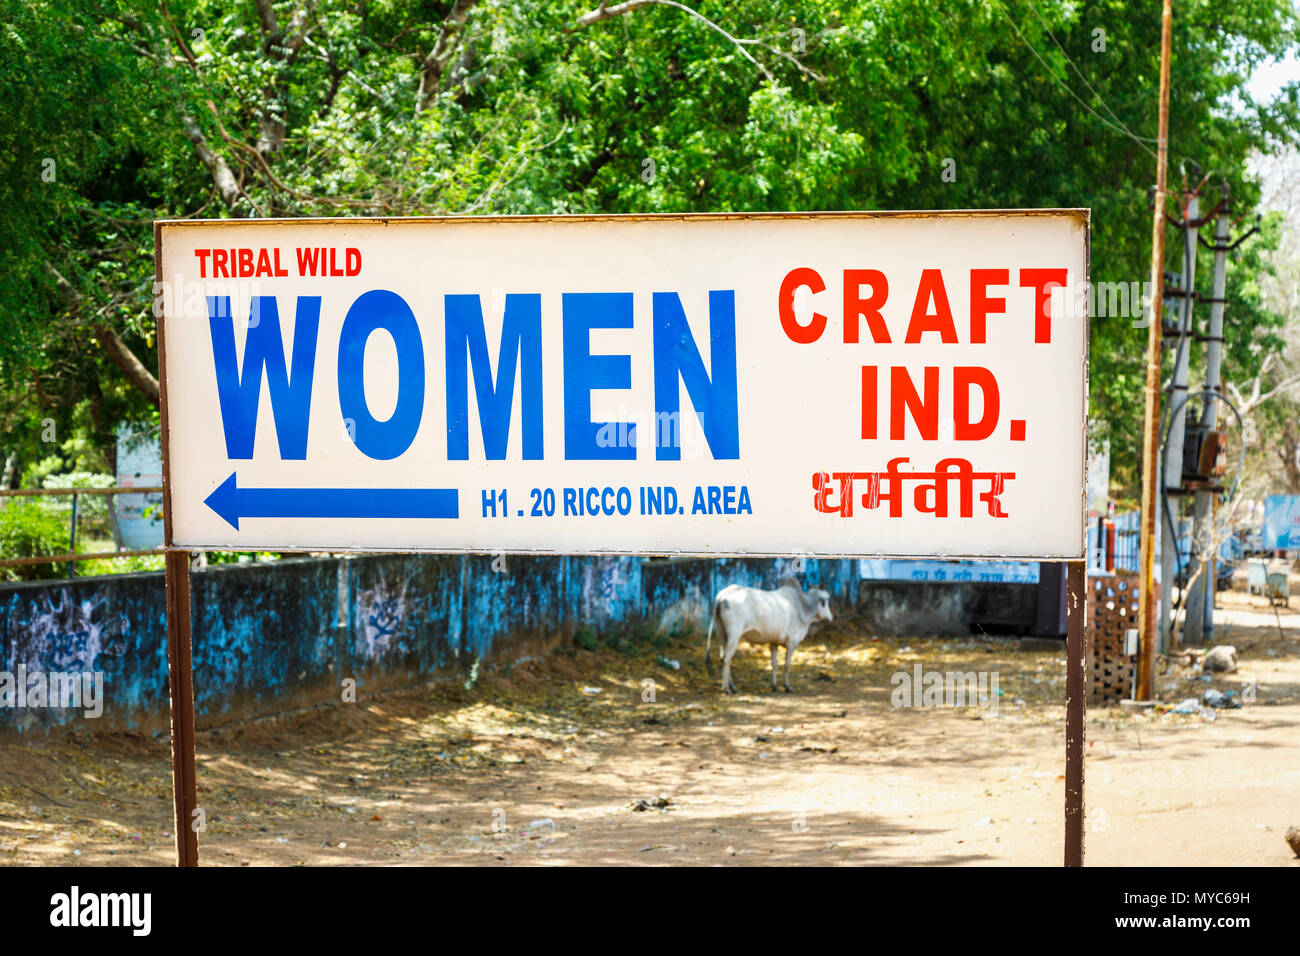 Cartello stradale pubblicità Tribal Wild donne Craft, artigianato locale, Sawai Madhopur città vicino al Parco nazionale di Ranthambore, Rajasthan, India del nord Foto Stock